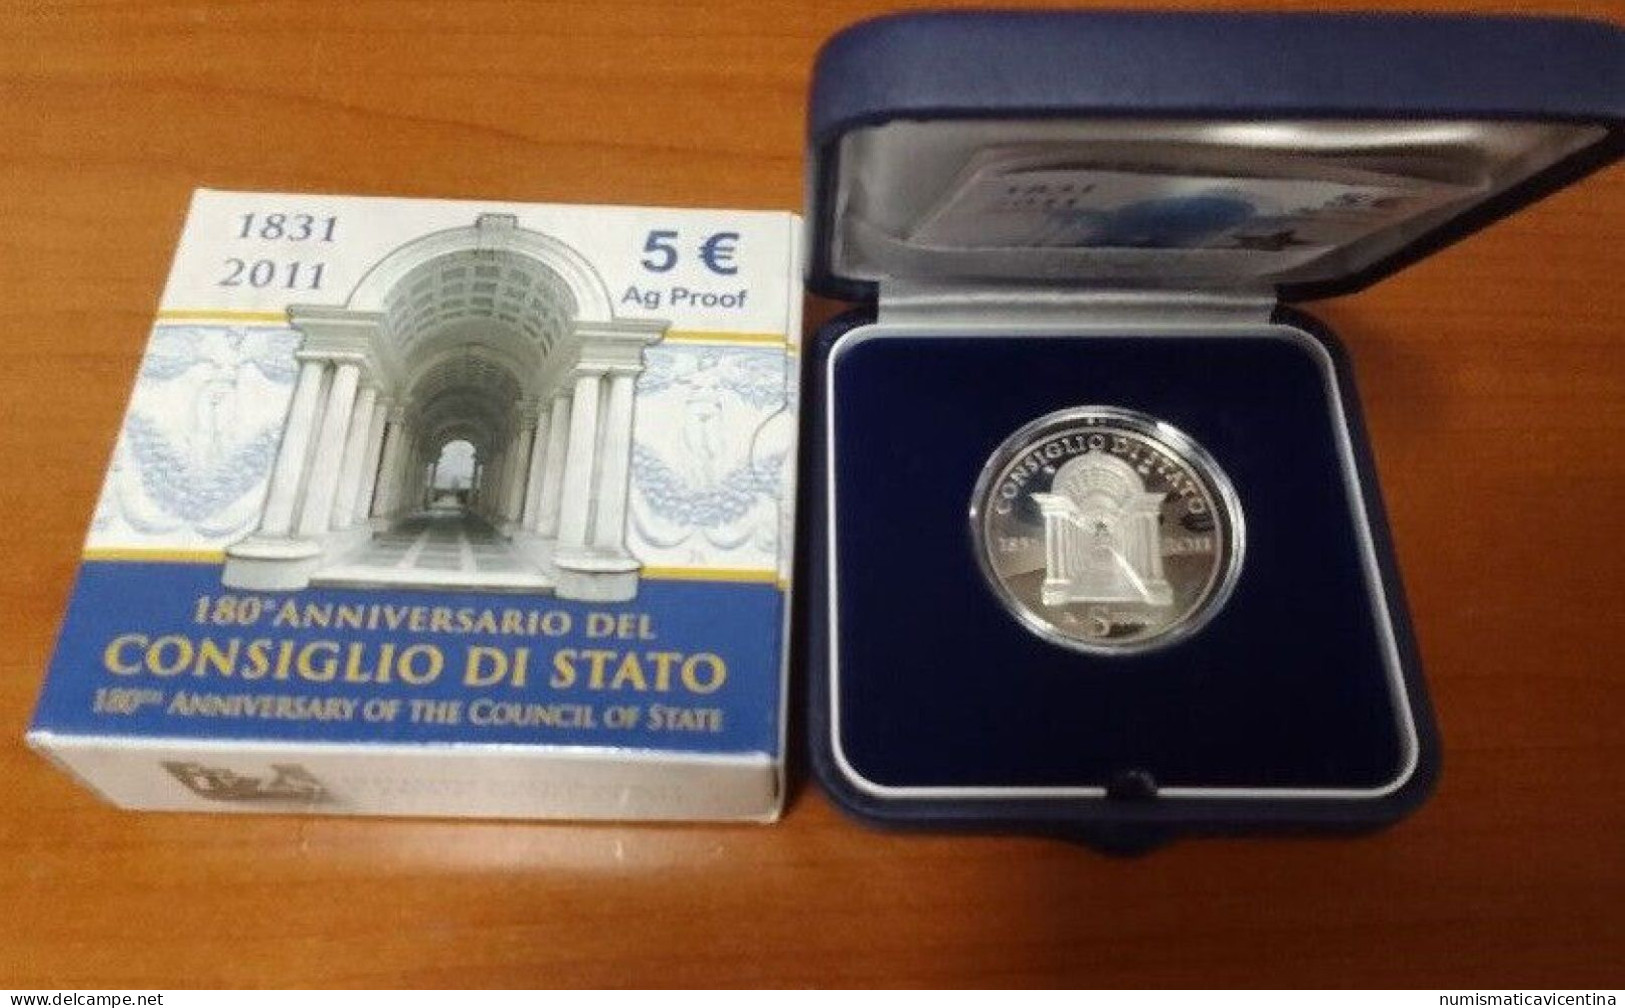 Italia 5 Euro 2011 Consiglio Di Stato 180° Anniversario € Silver Coin UNC PROOF - Italie